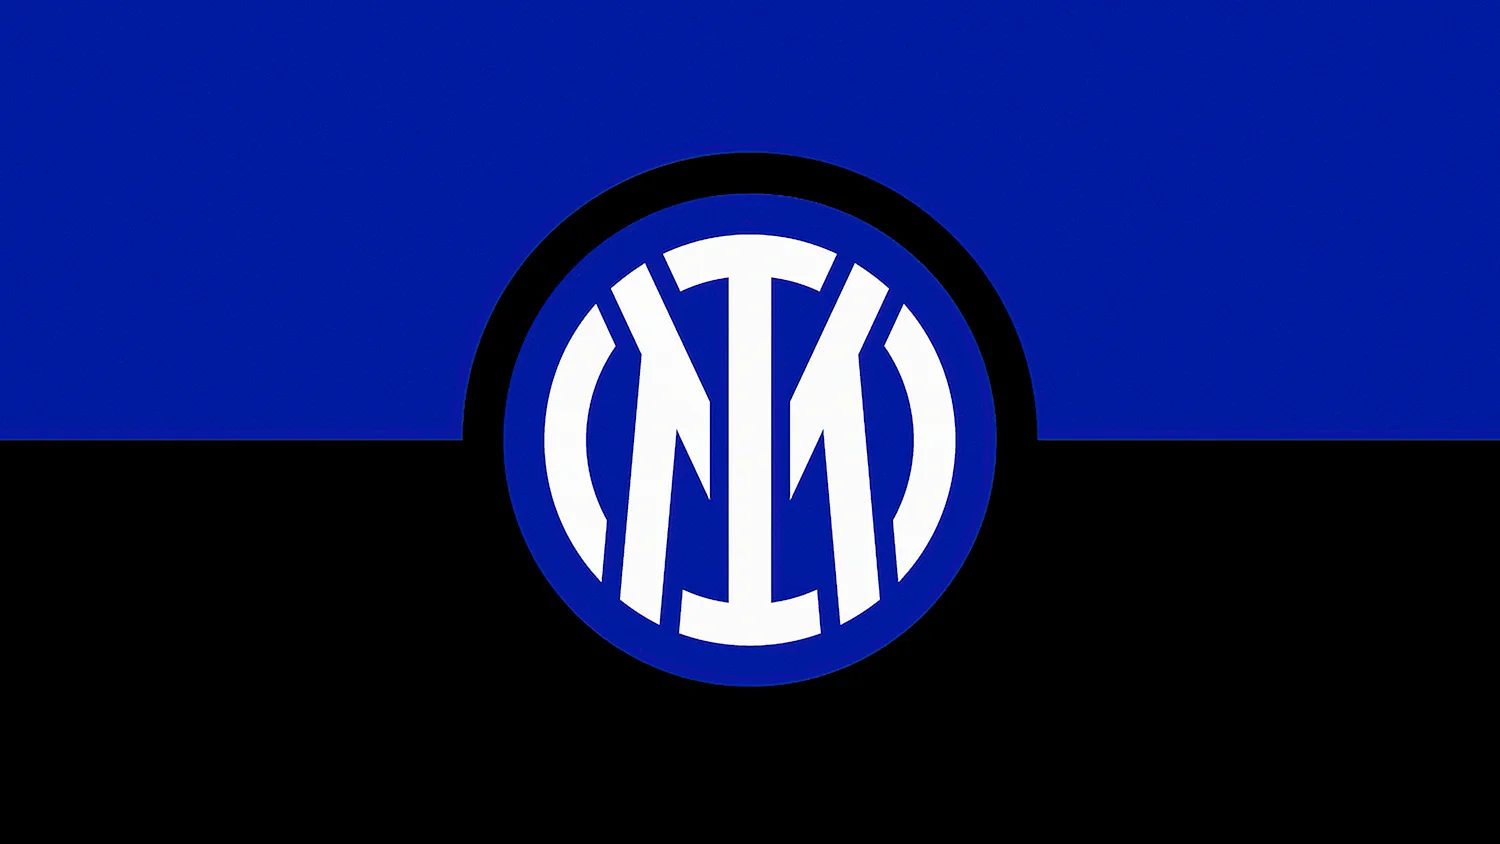 Интер Милан логотип 2021